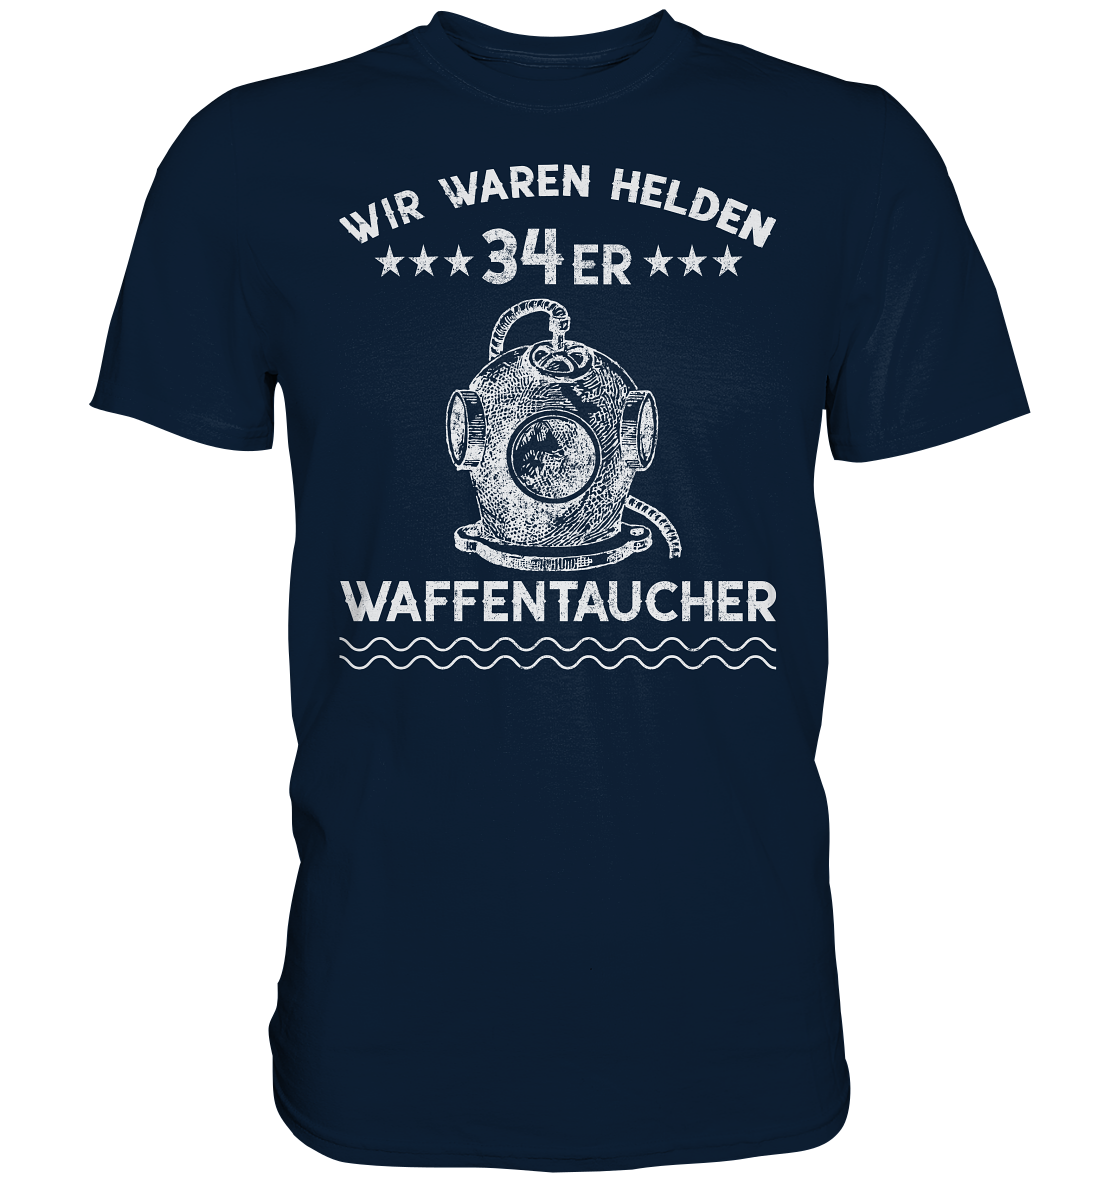 WAFFENTAUCHER - Wir waren Helden  - Premium Shirt